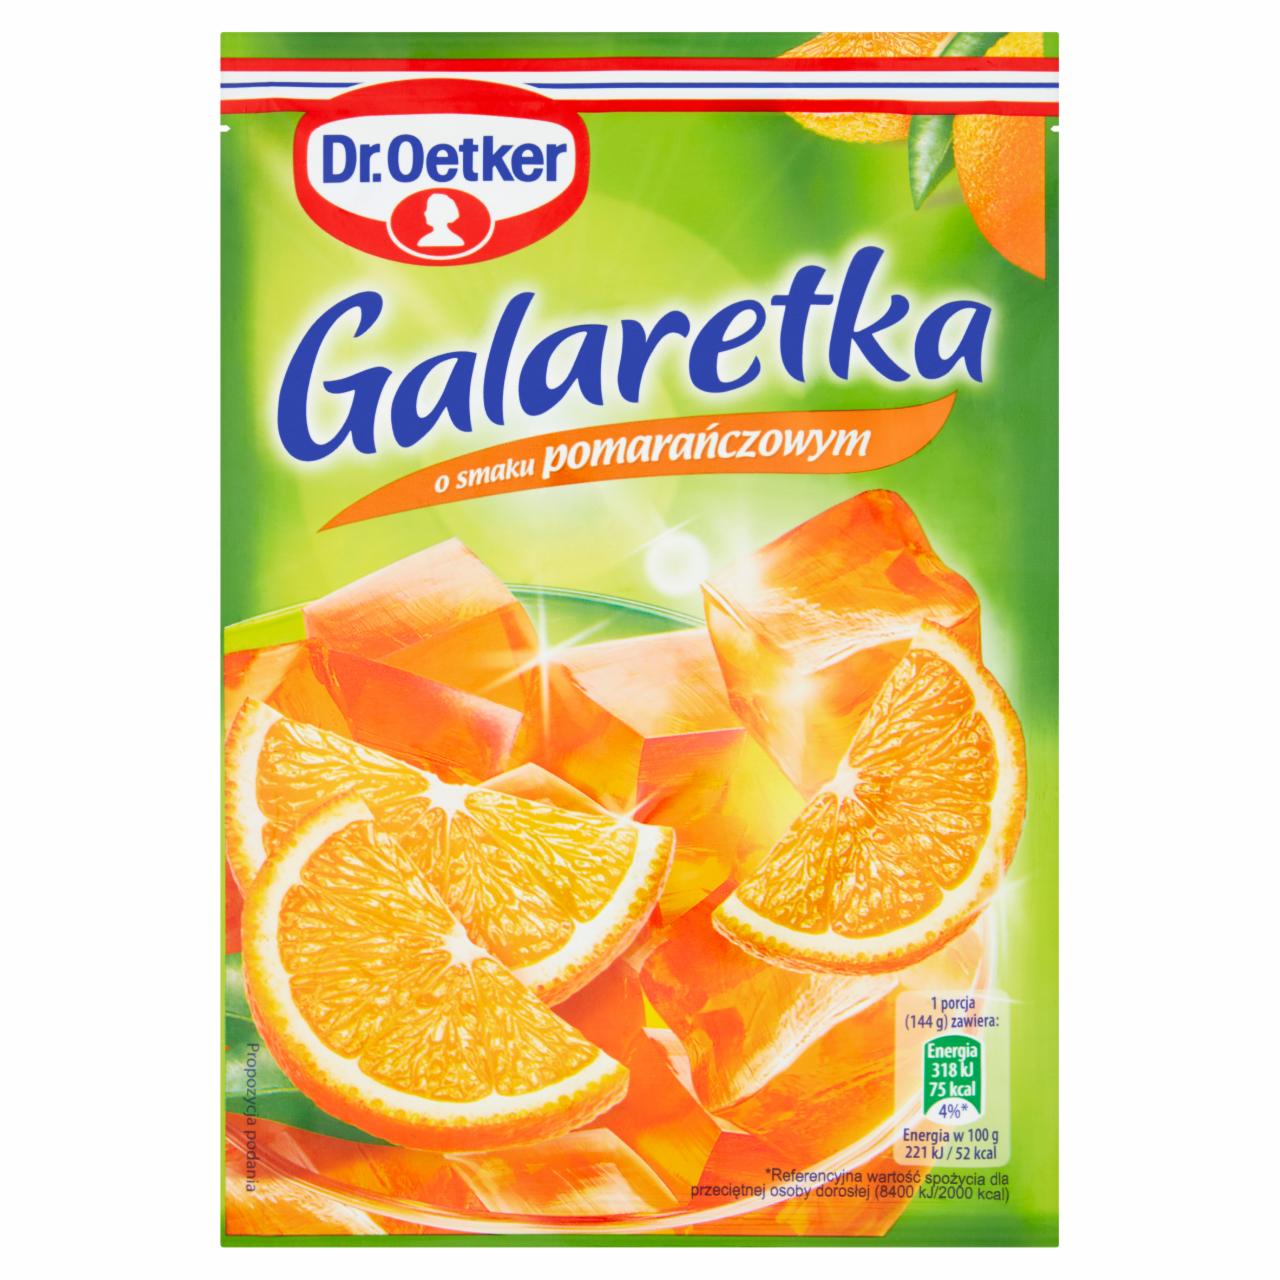 Zdjęcia - Galaretka o smaku pomarańczowym Dr. Oetker